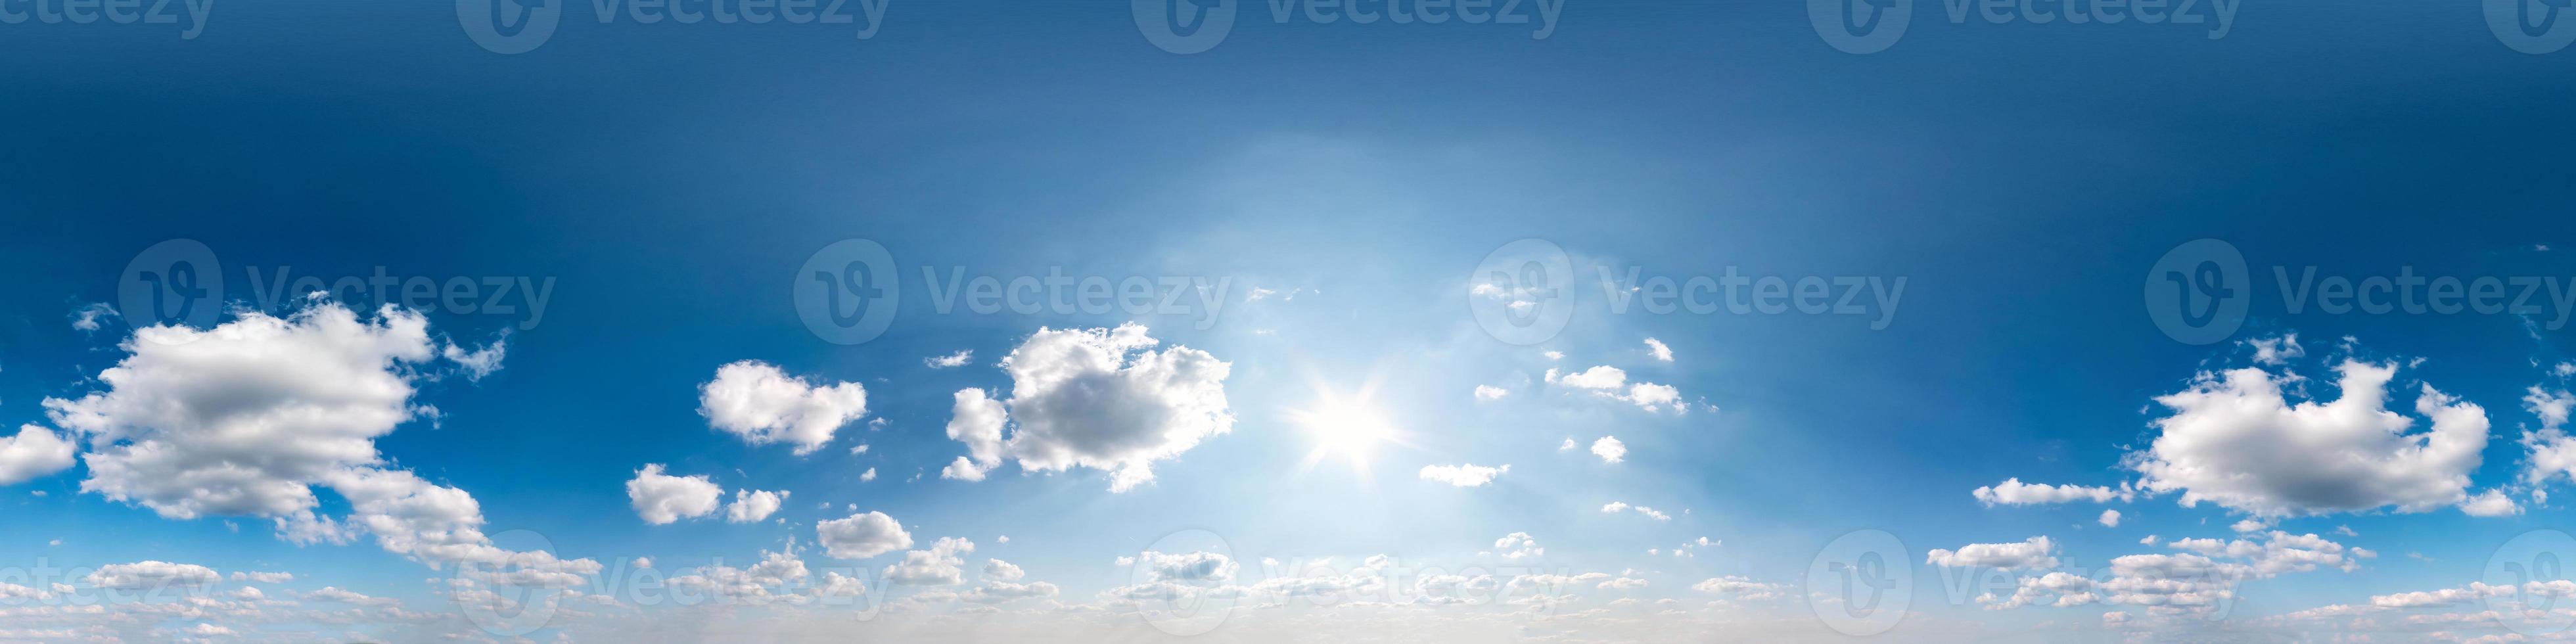 naadloze bewolkte blauwe lucht hdri panorama 360 graden hoekweergave met zenit en prachtige wolken voor gebruik in 3D-graphics als sky dome of edit drone shot foto